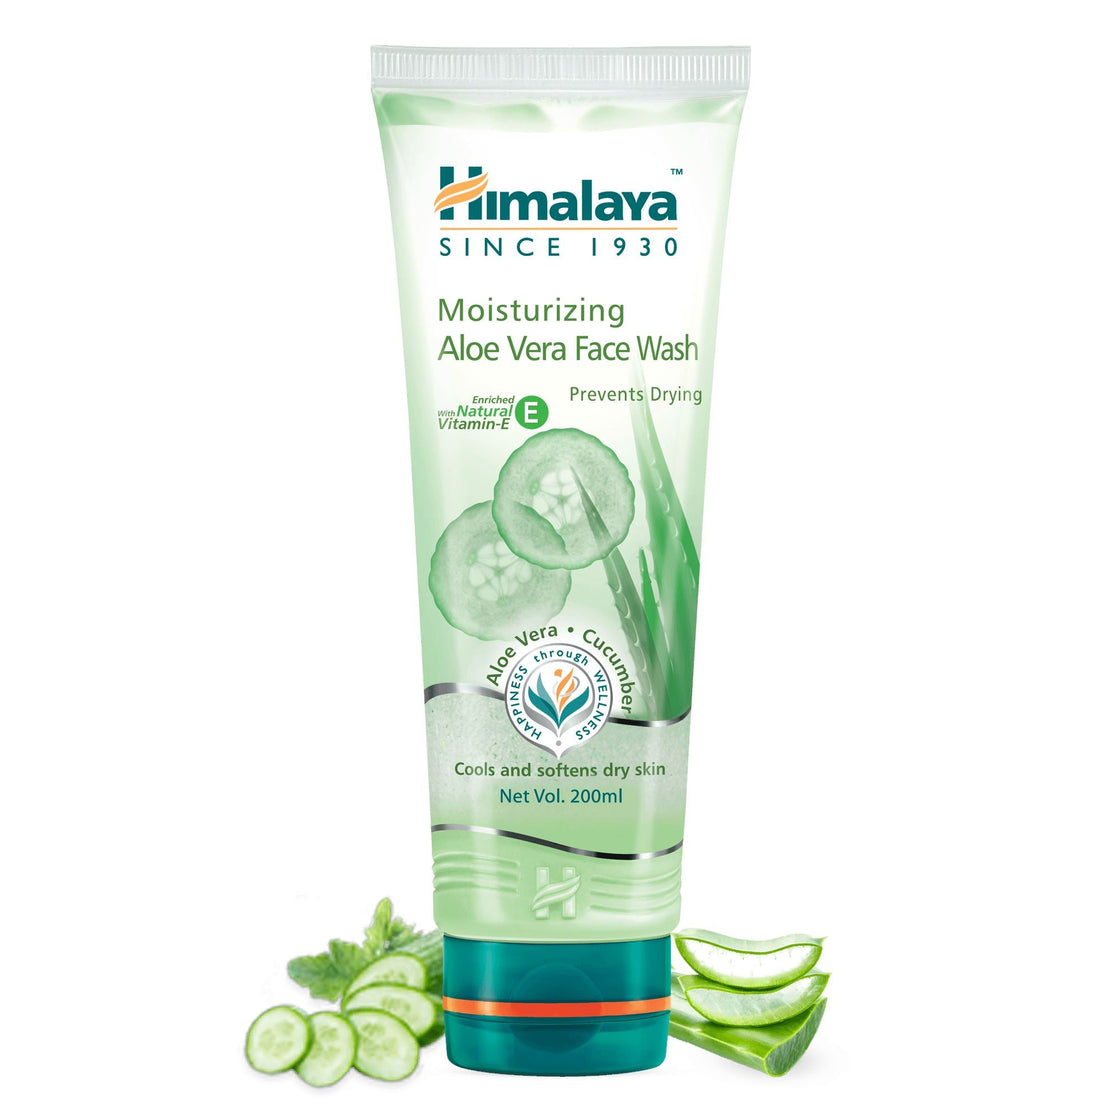  Himalaya Moisturizing Aloe Vera Face Wash (200ML)